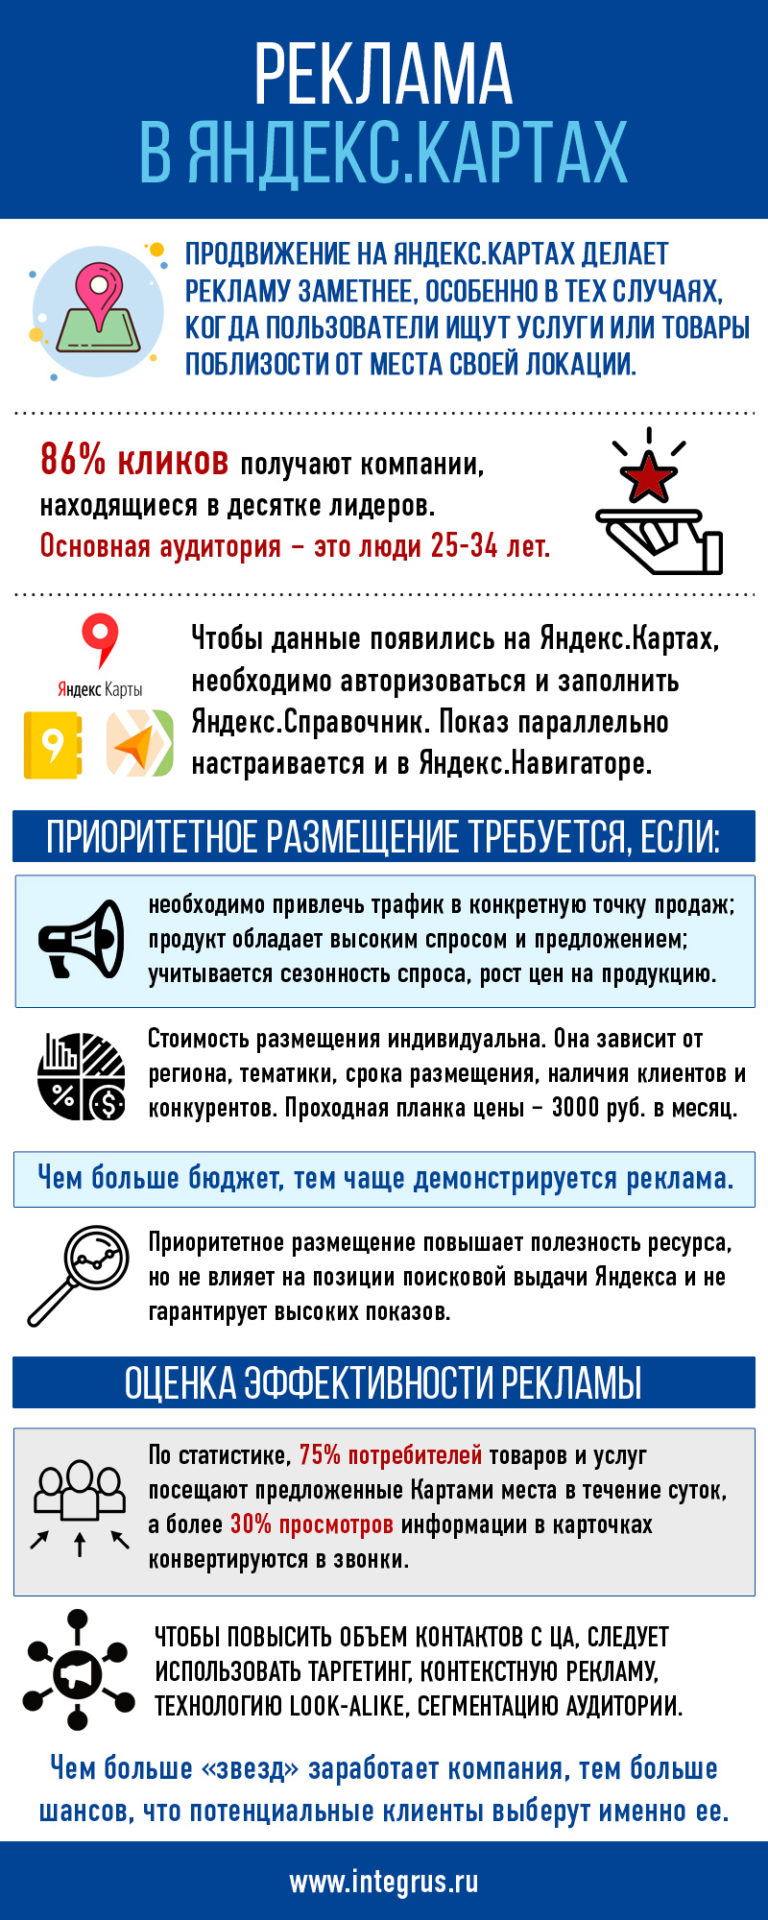 Продвижение на Яндекс Картах